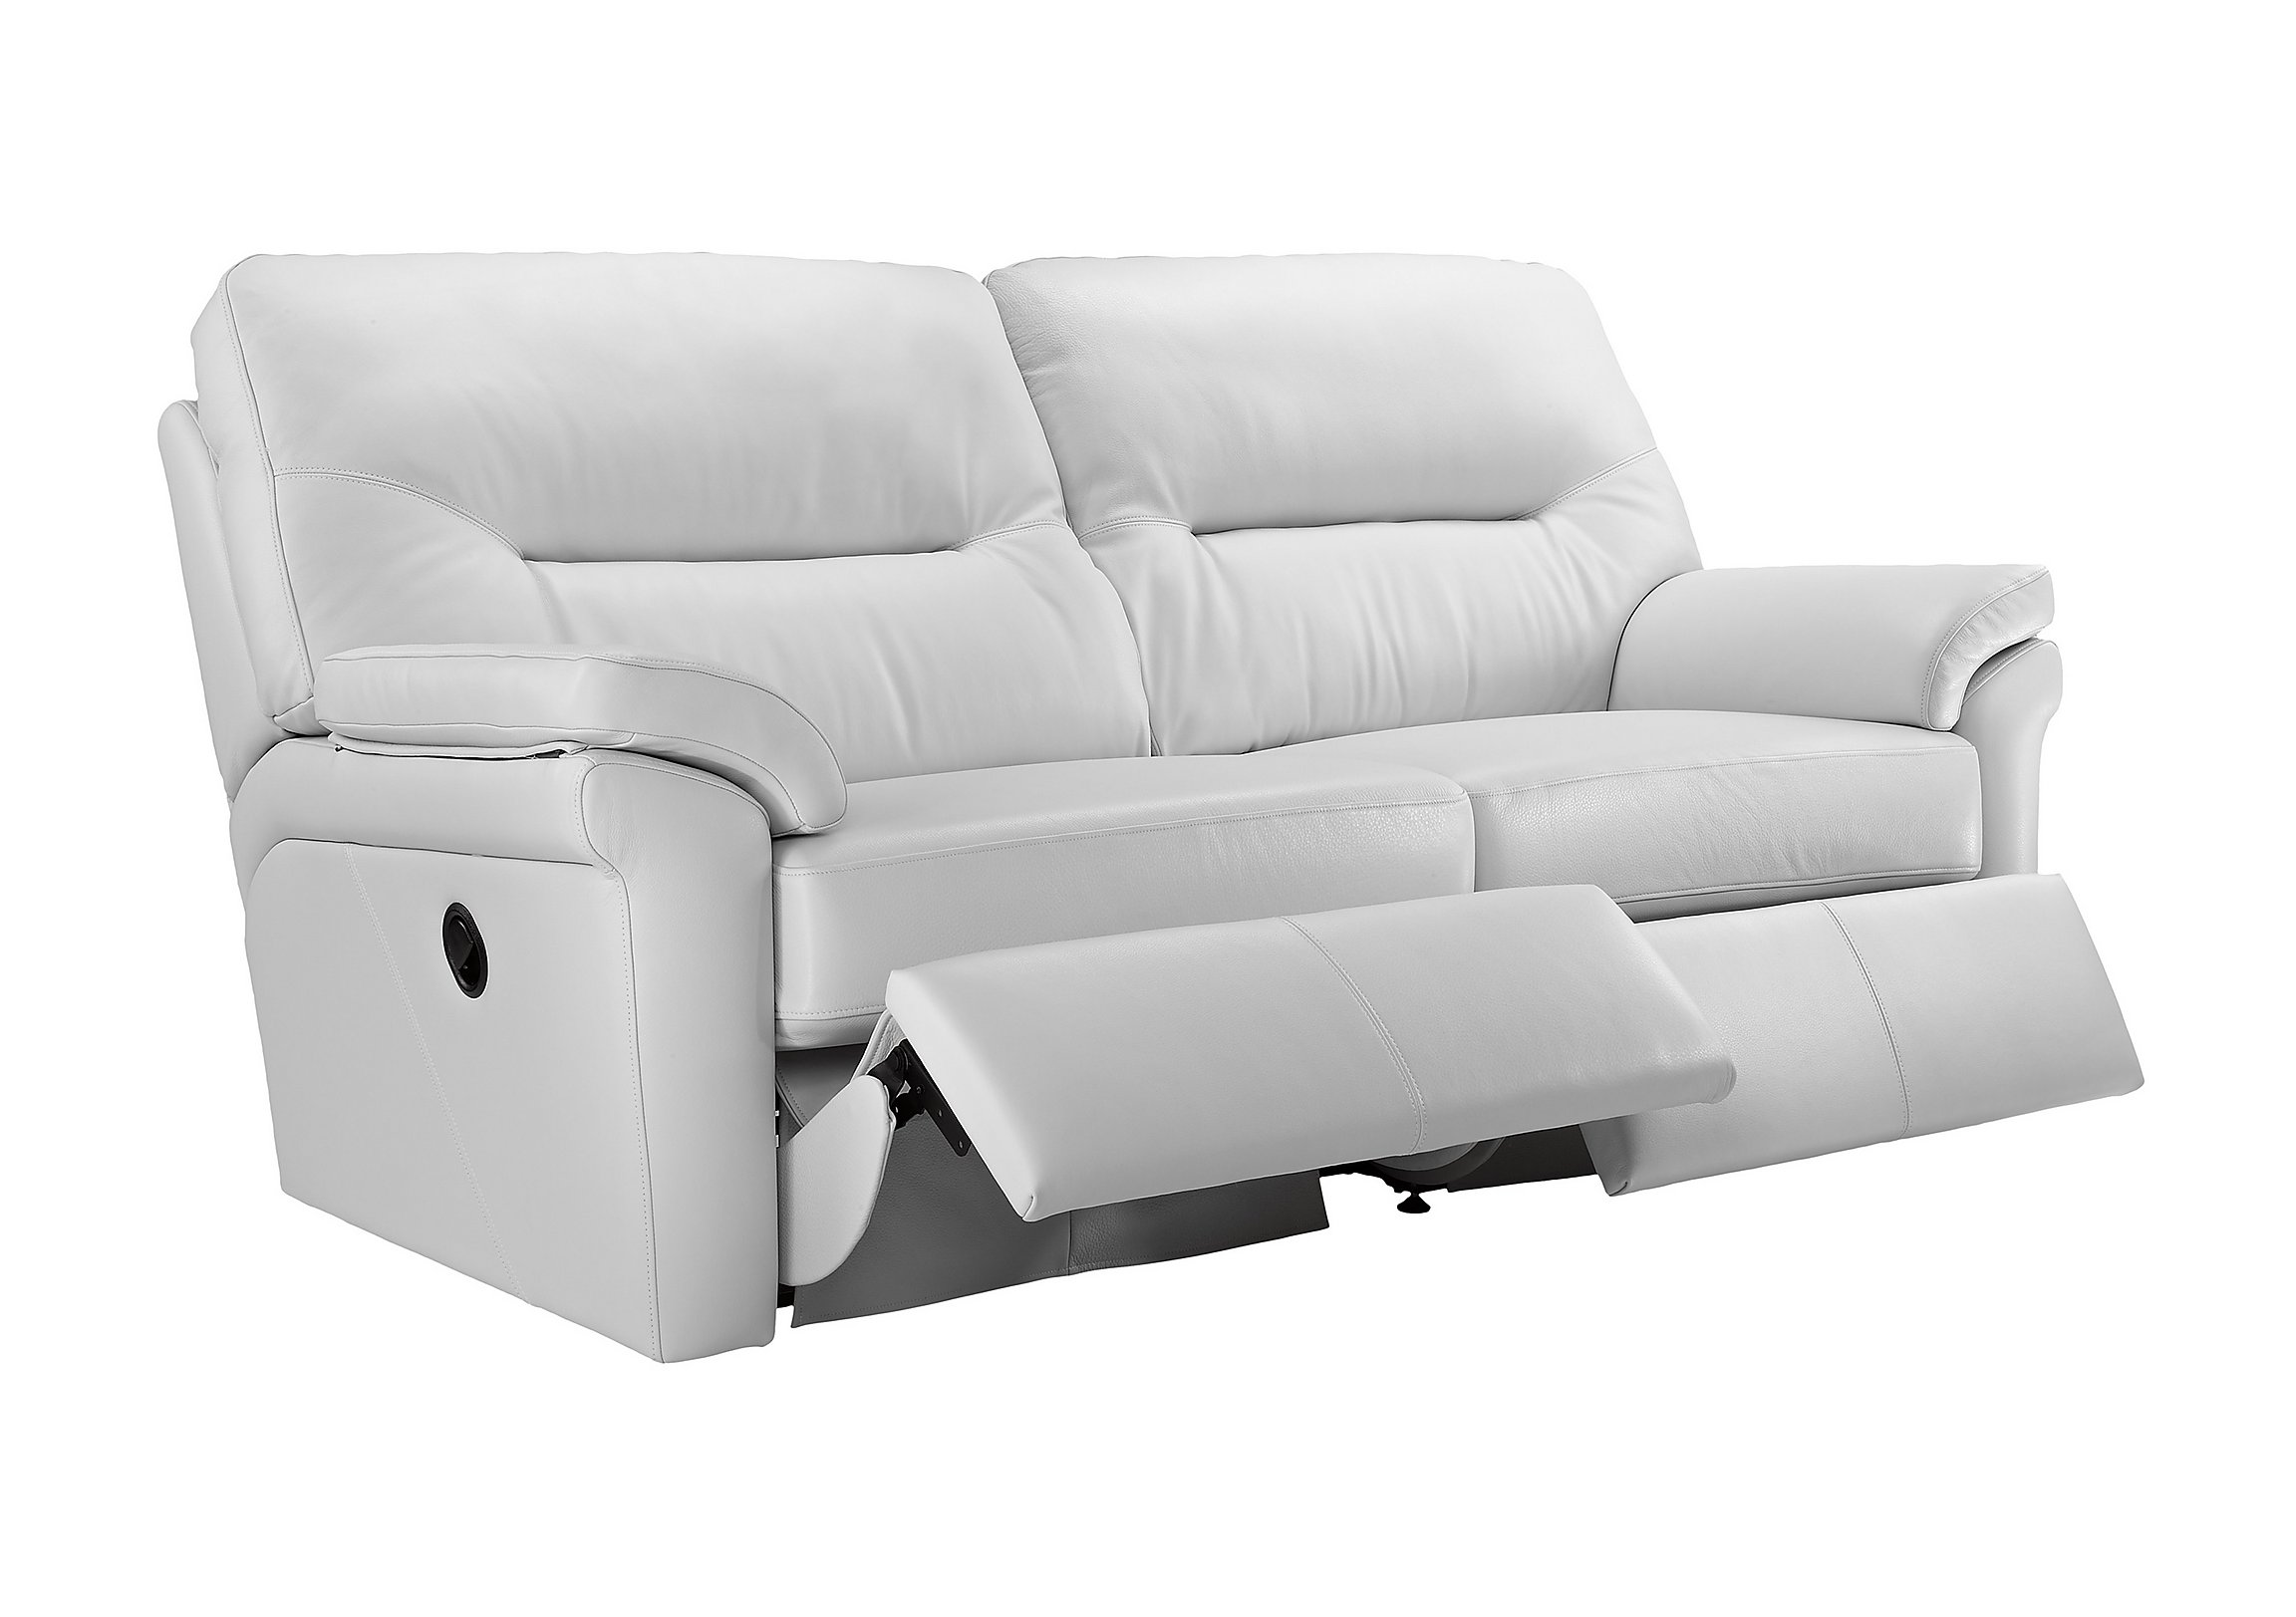 Washington 3 Seater Leather Recliner Sofa G Plan Furniture Village